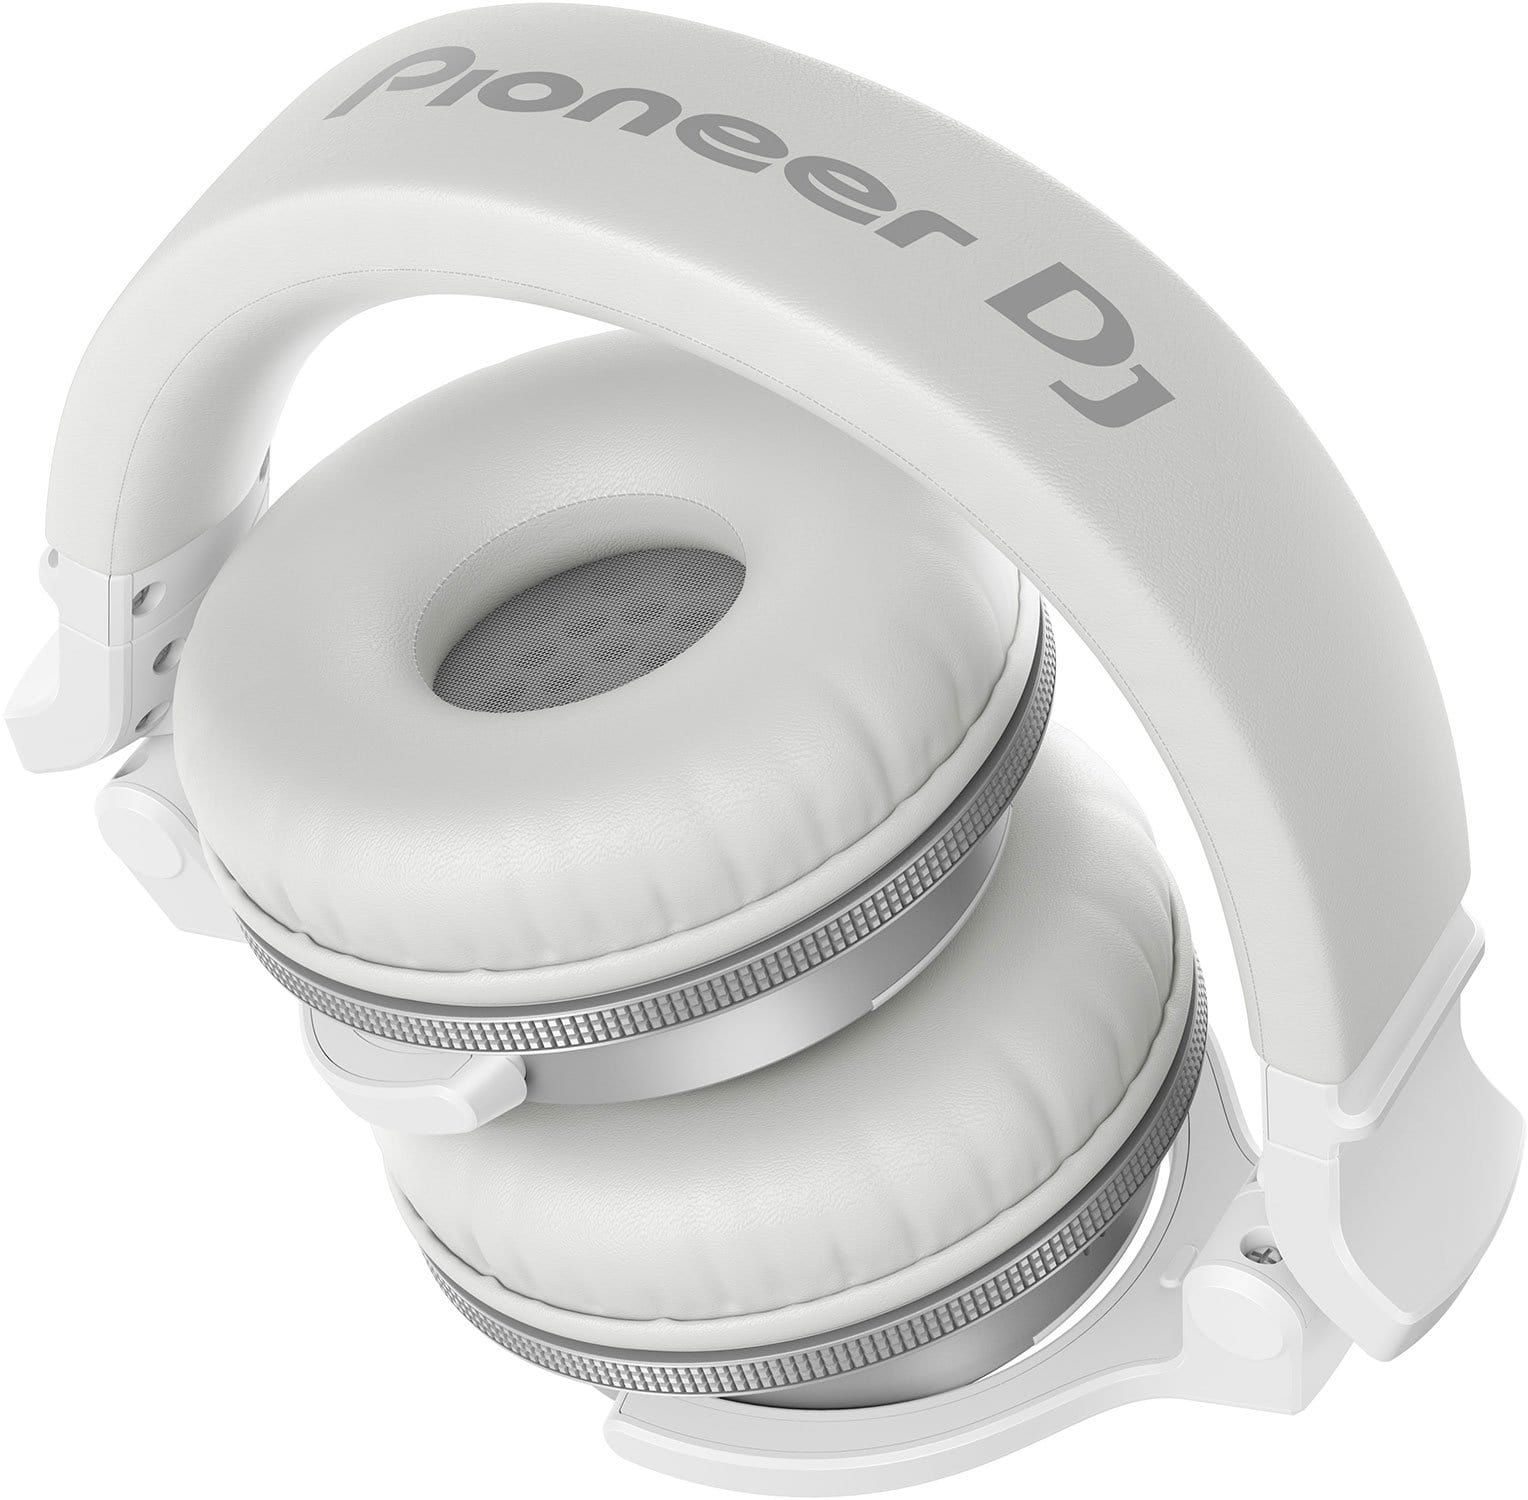 Pioneer HDJ-CUE1BT-W Wireless Bluetooth DJ Headphones - White - PSSL ProSound and Stage Lighting